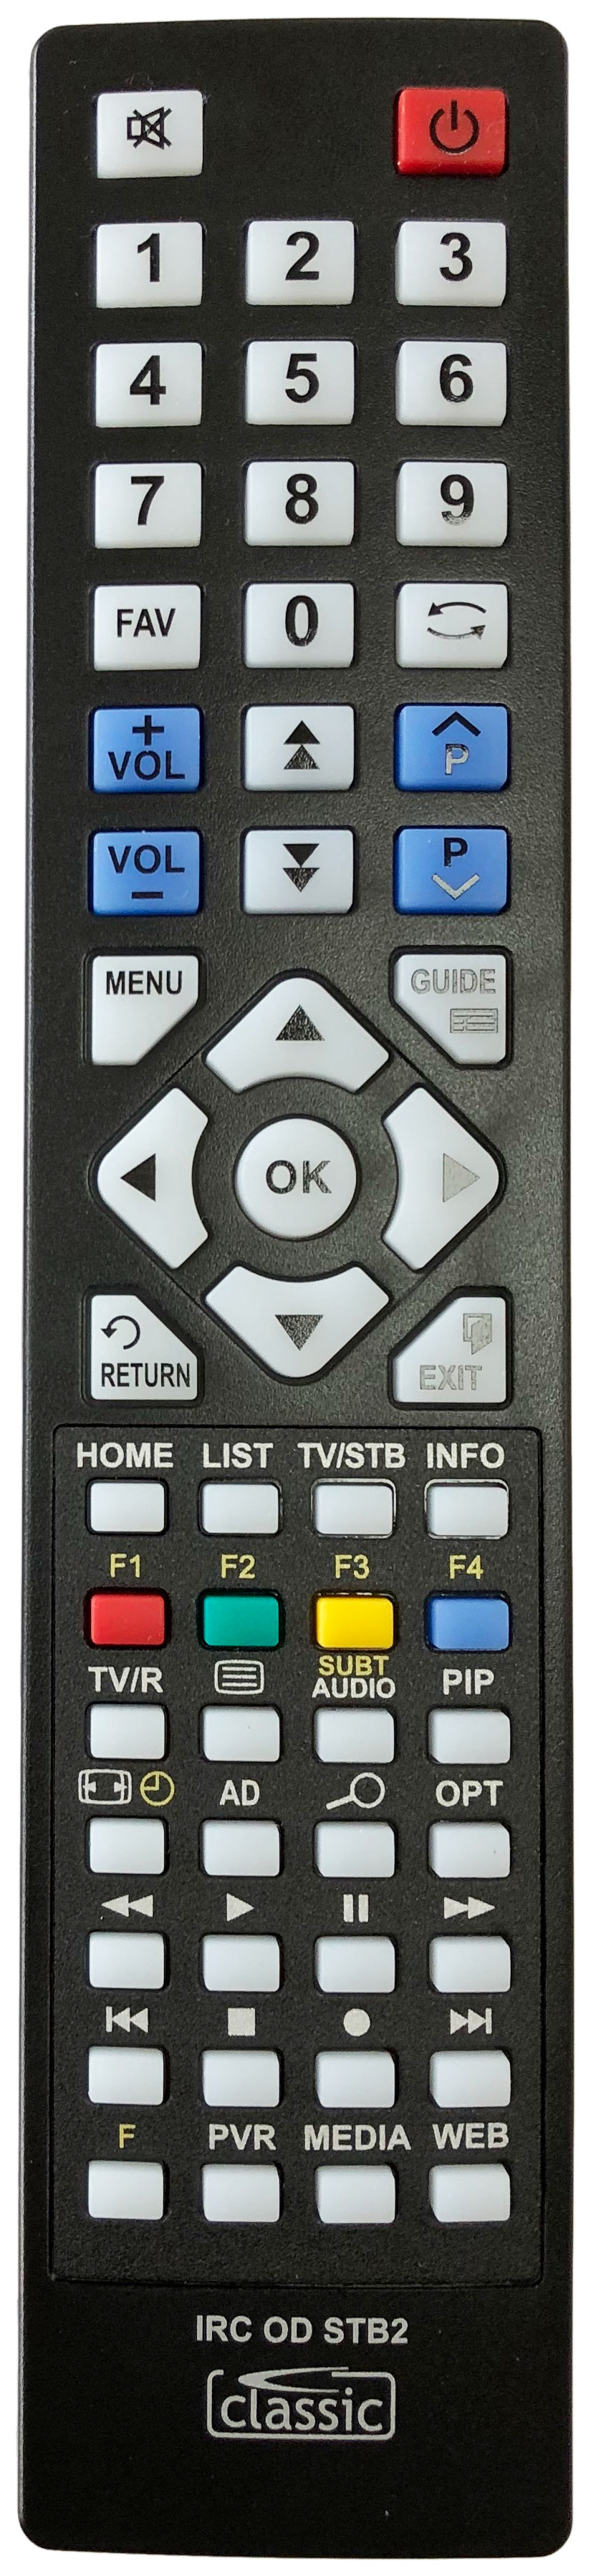 Humax HDFOX C Remote Control